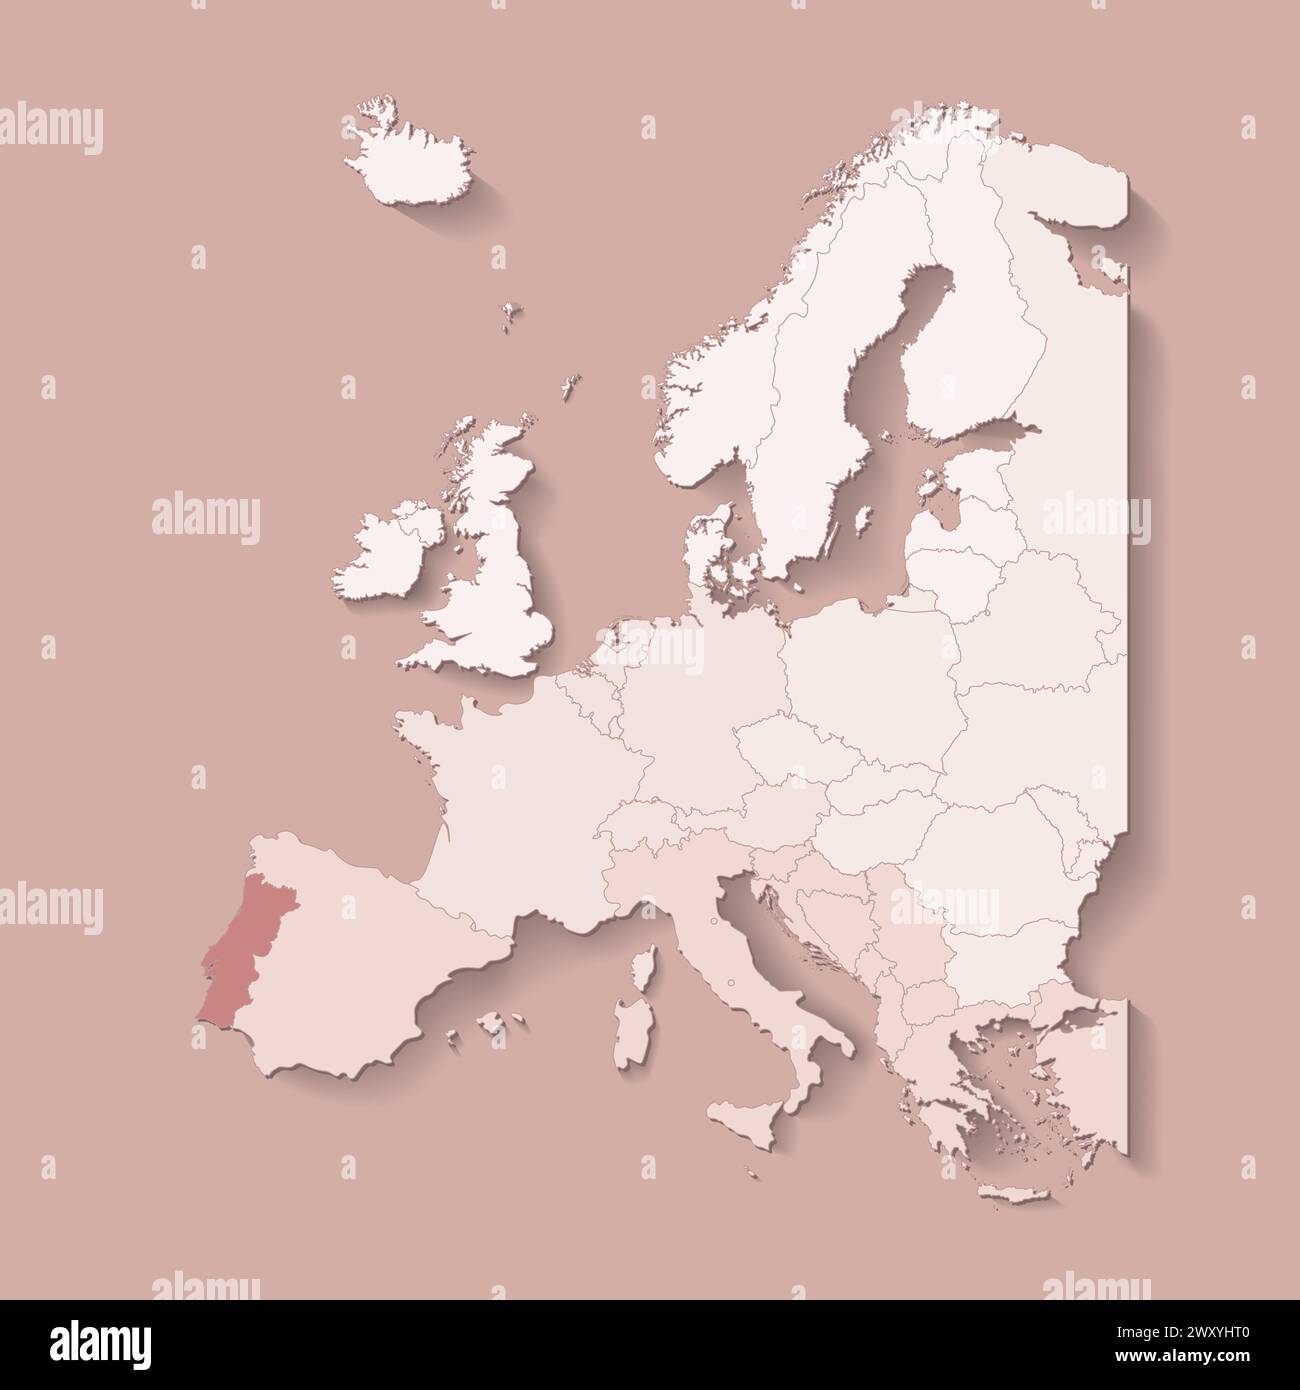 Illustrazione vettoriale con terra europea con confini di stati e paese contrassegnato Portogallo. Mappa politica di colore marrone con occidentale, sud e così via Illustrazione Vettoriale